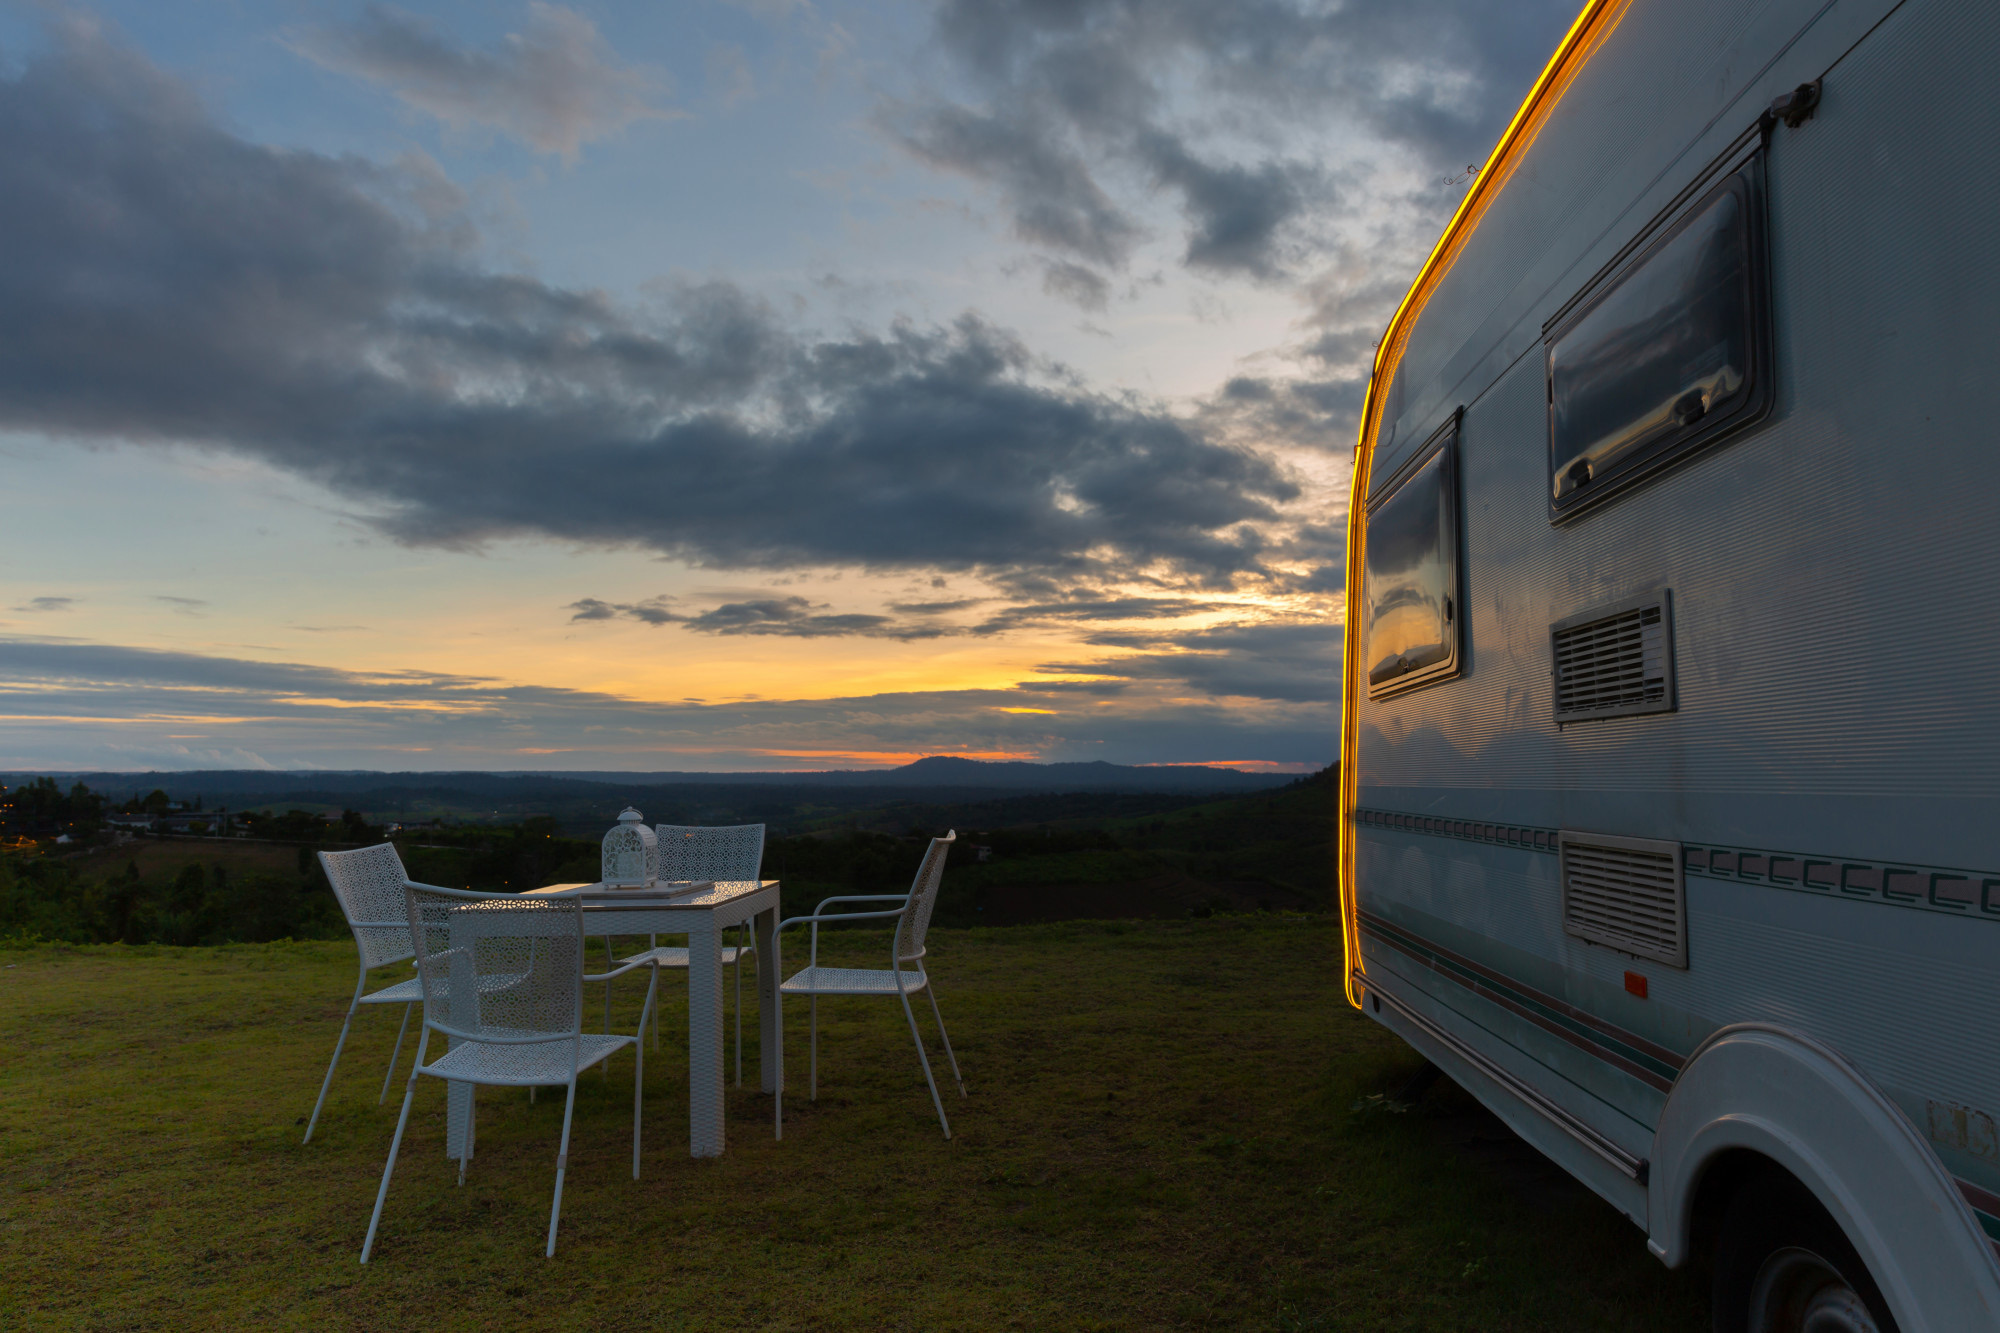 campsite-with-caravans-dusk-tim